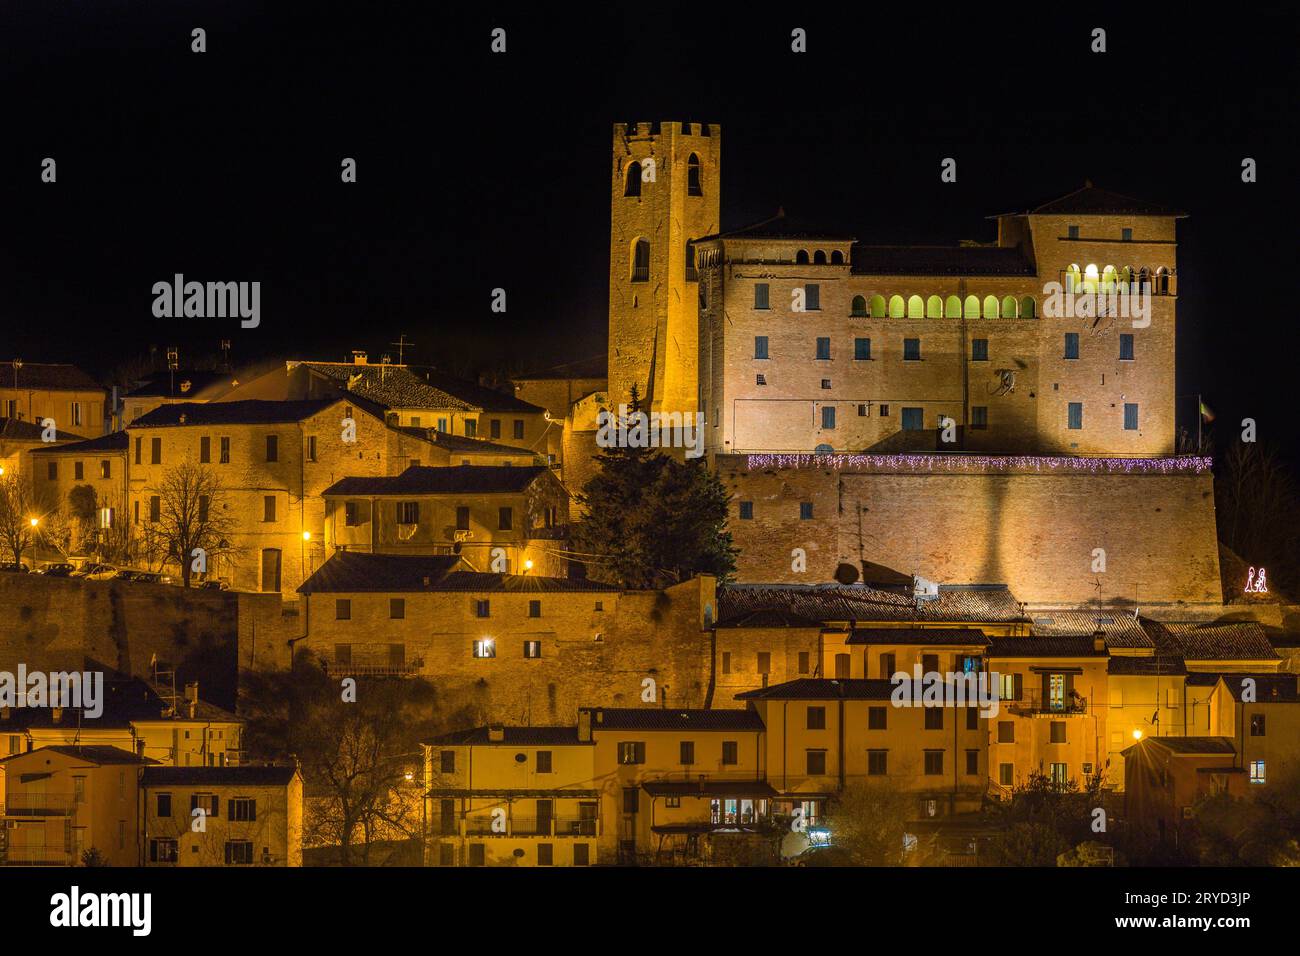 Village médiéval sur une colline rocheuse en Italie pendant la nuit Banque D'Images